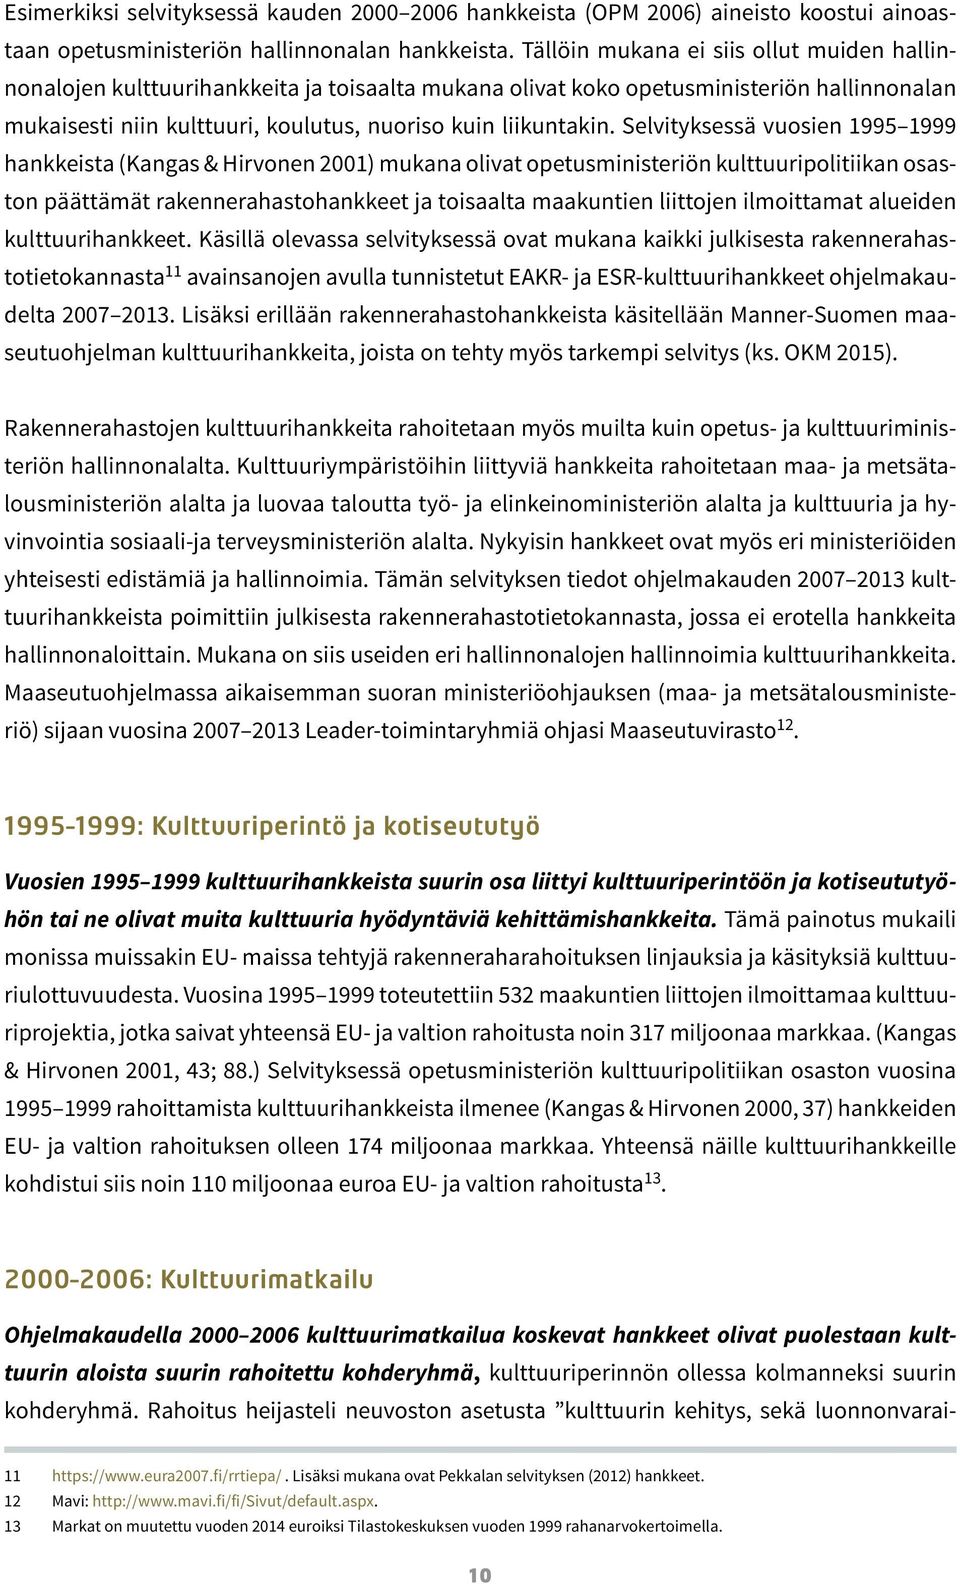 Selvityksessä vuosien 1995 1999 hankkeista (Kangas & Hirvonen 2001) mukana olivat opetusministeriön kulttuuripolitiikan osaston päättämät rakennerahastohankkeet ja toisaalta maakuntien liittojen